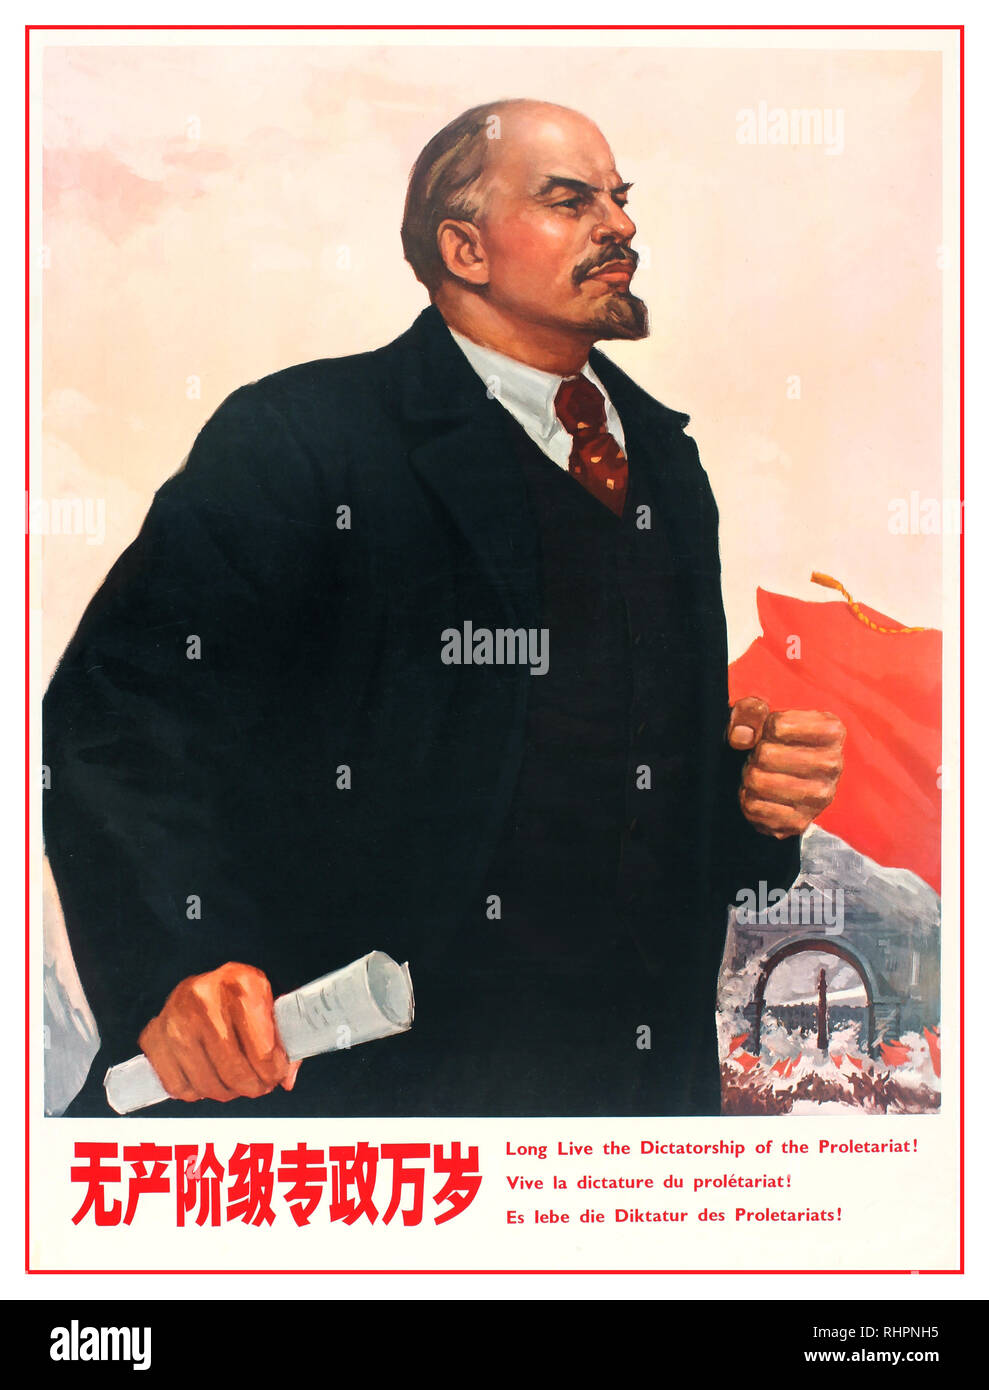 1980 die chinesische Propaganda Poster.. von Beispiel - Lenin - "Es lebe die Diktatur des Proletariats"! Das kommunistische China 1986. Stockfoto